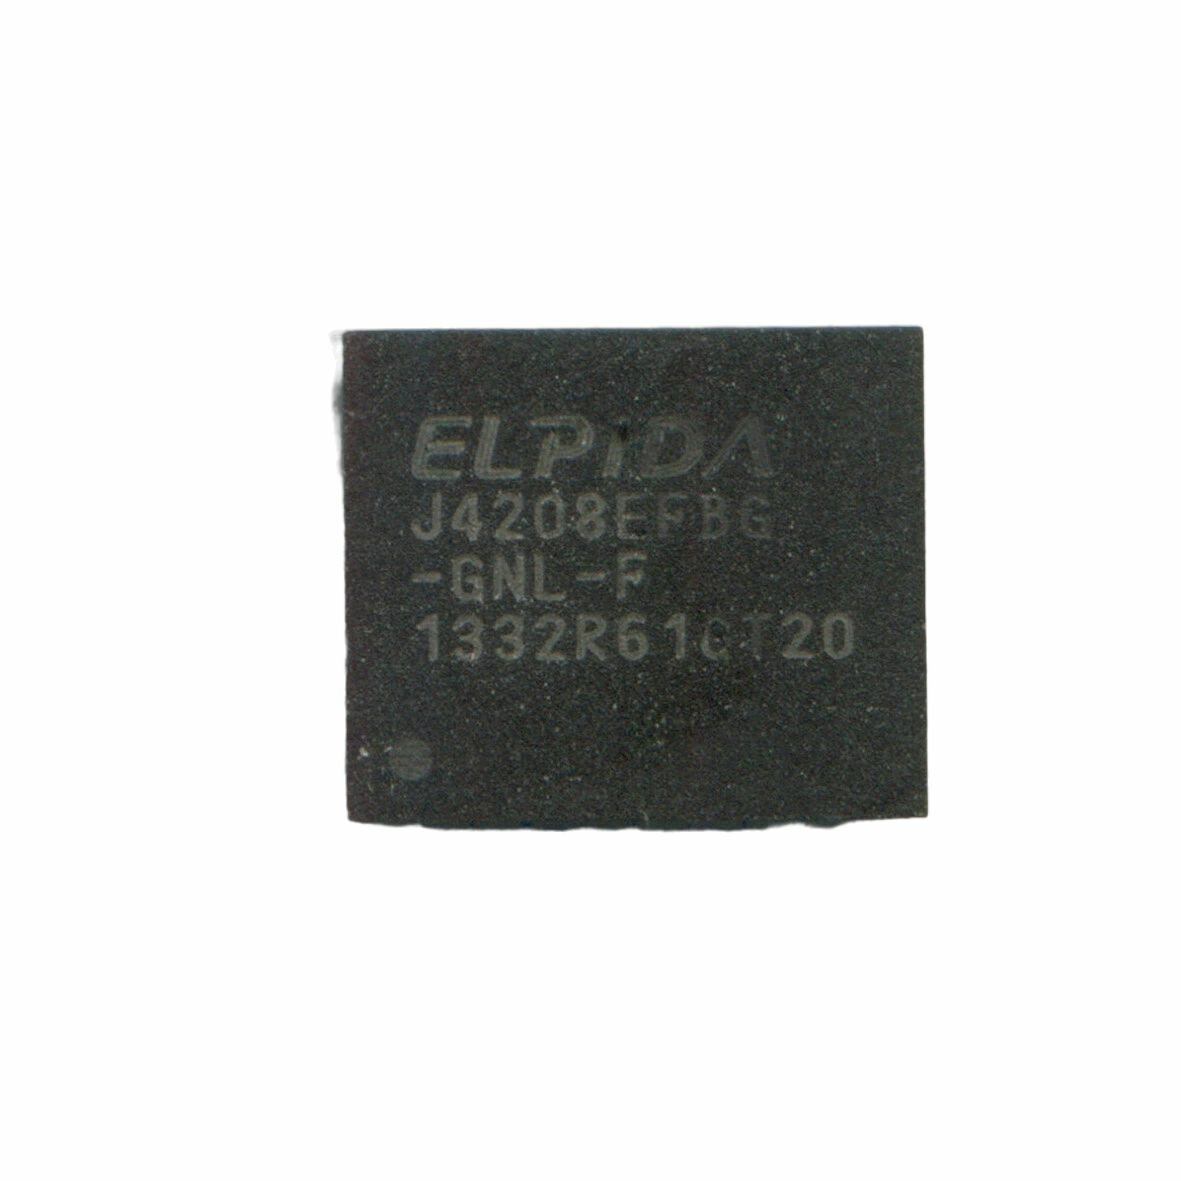 Микросхема оперативной памяти DDR3L 512Мб J4208EFBG-GNL-F